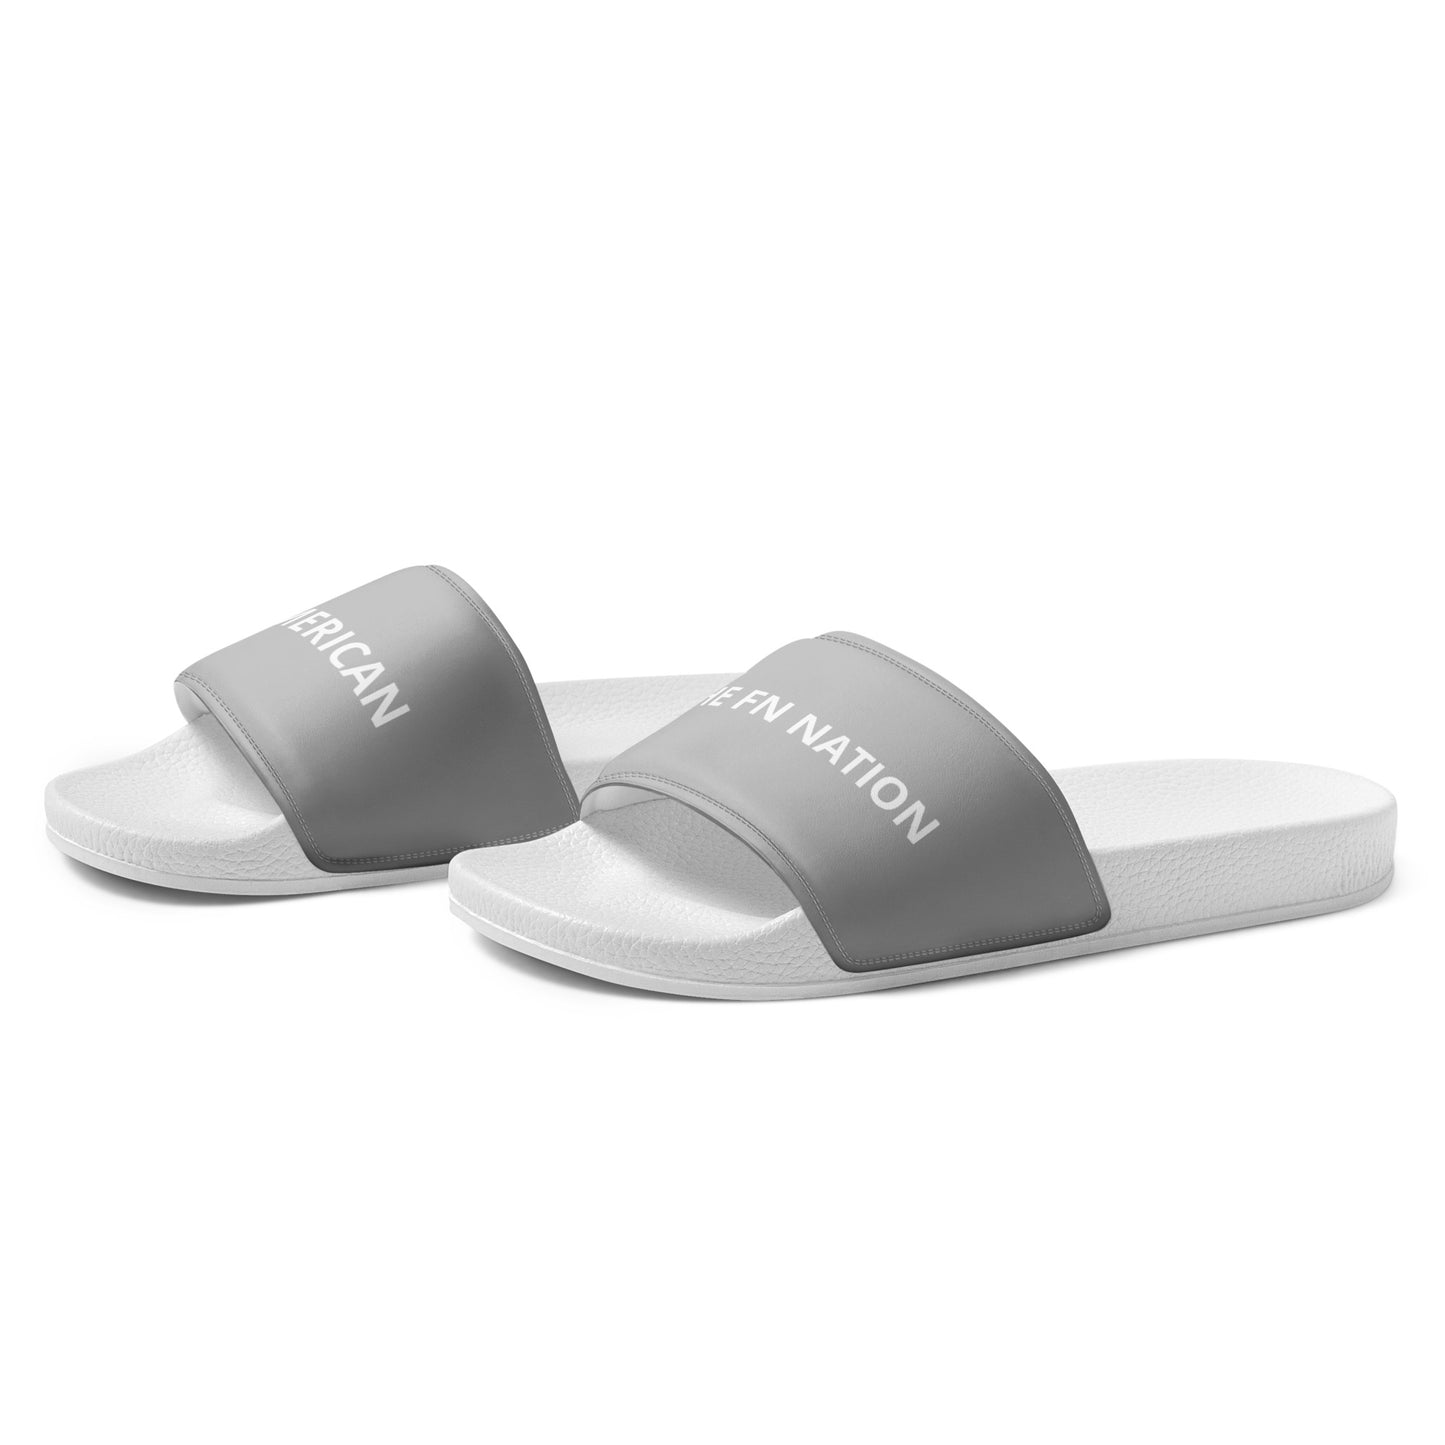 FN UNAMERICAN MEN'S: LAX Slides (white/silver)